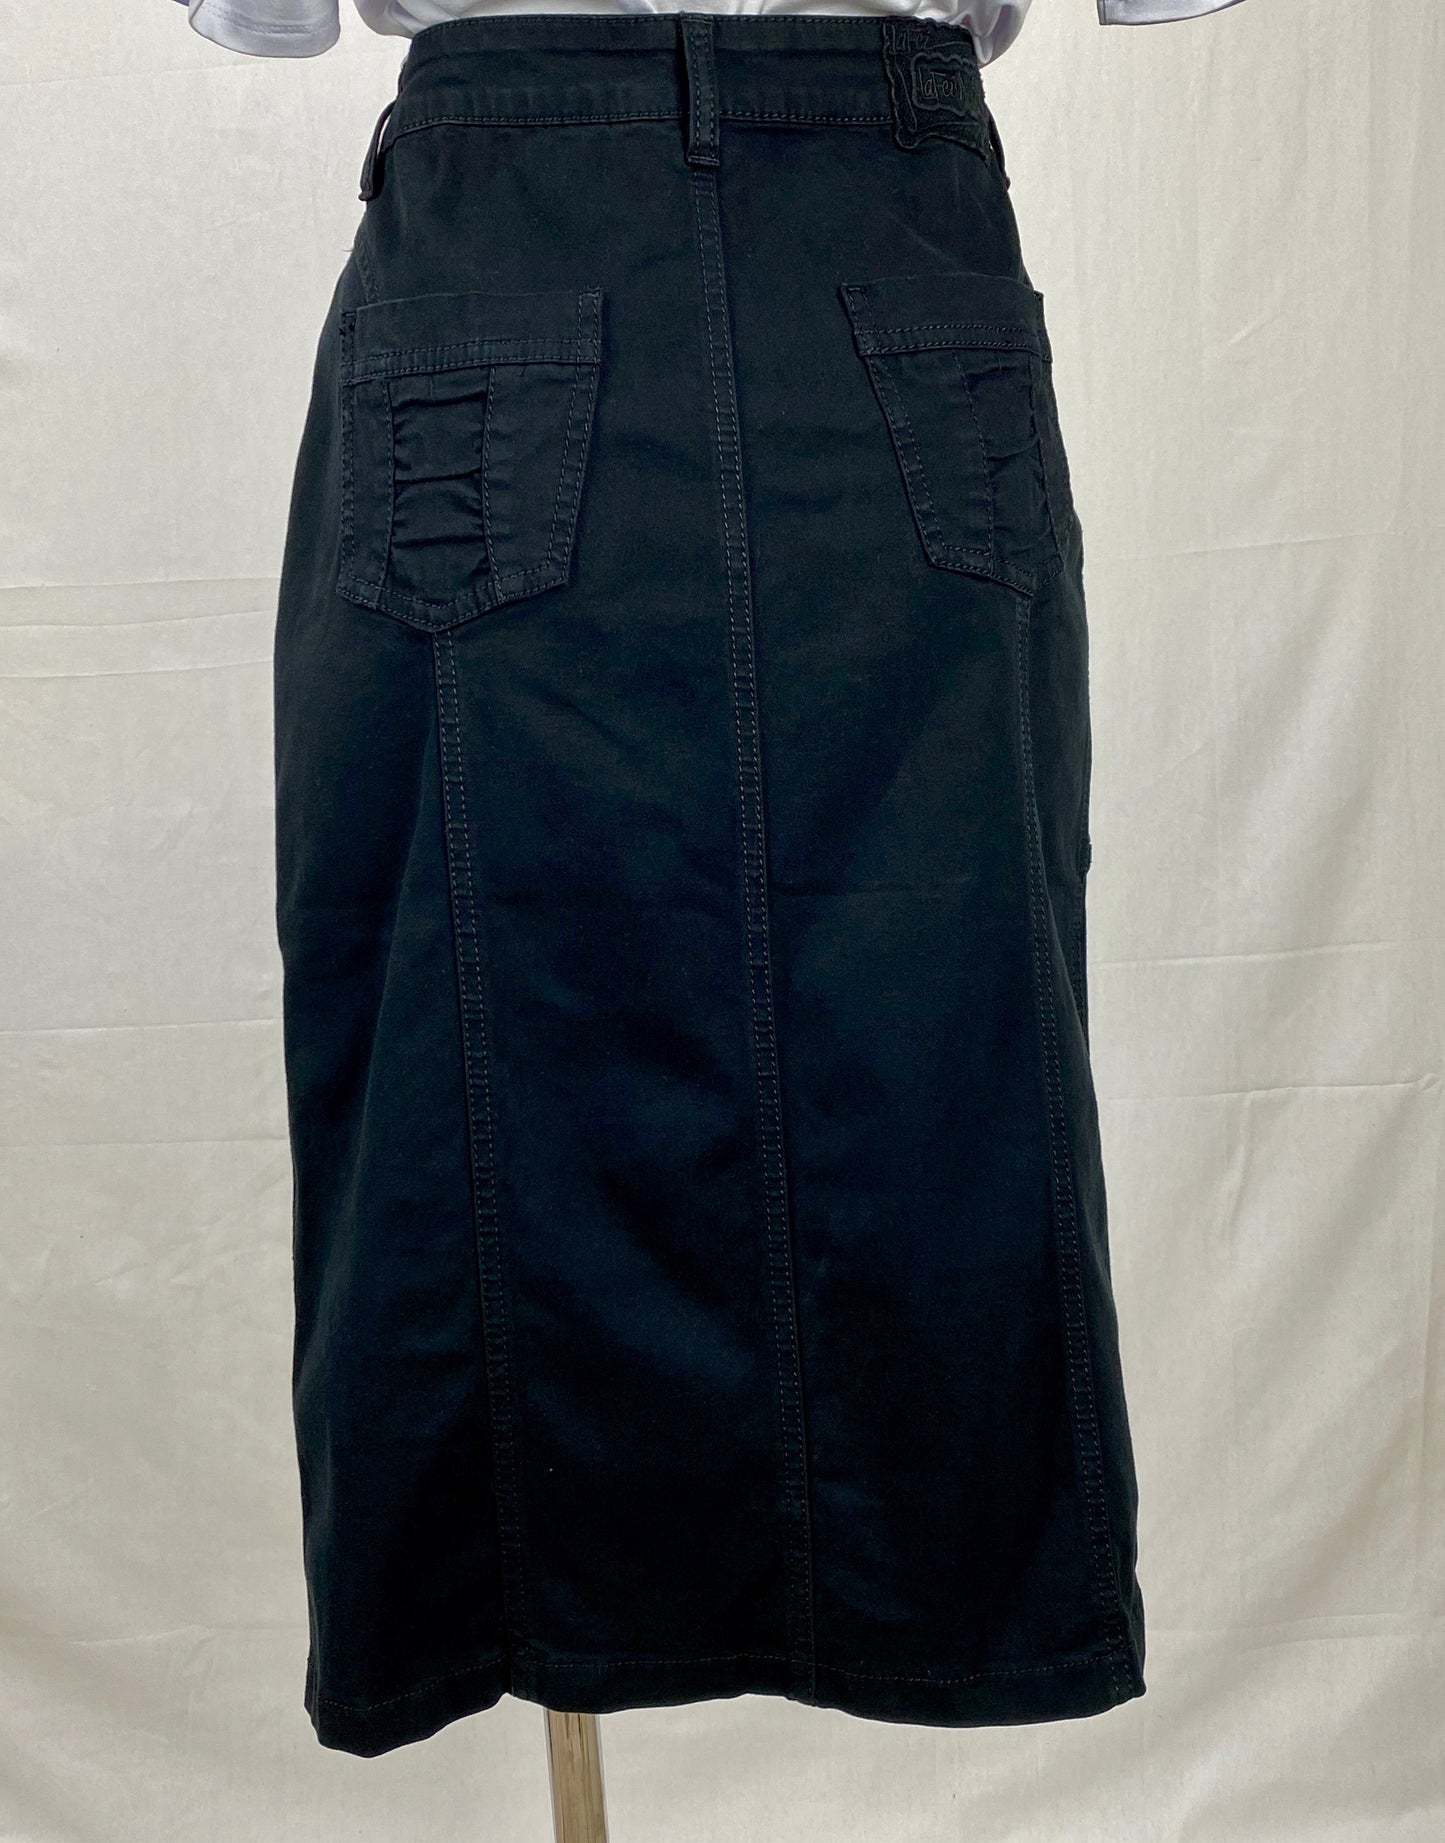 Button Skirt - Black